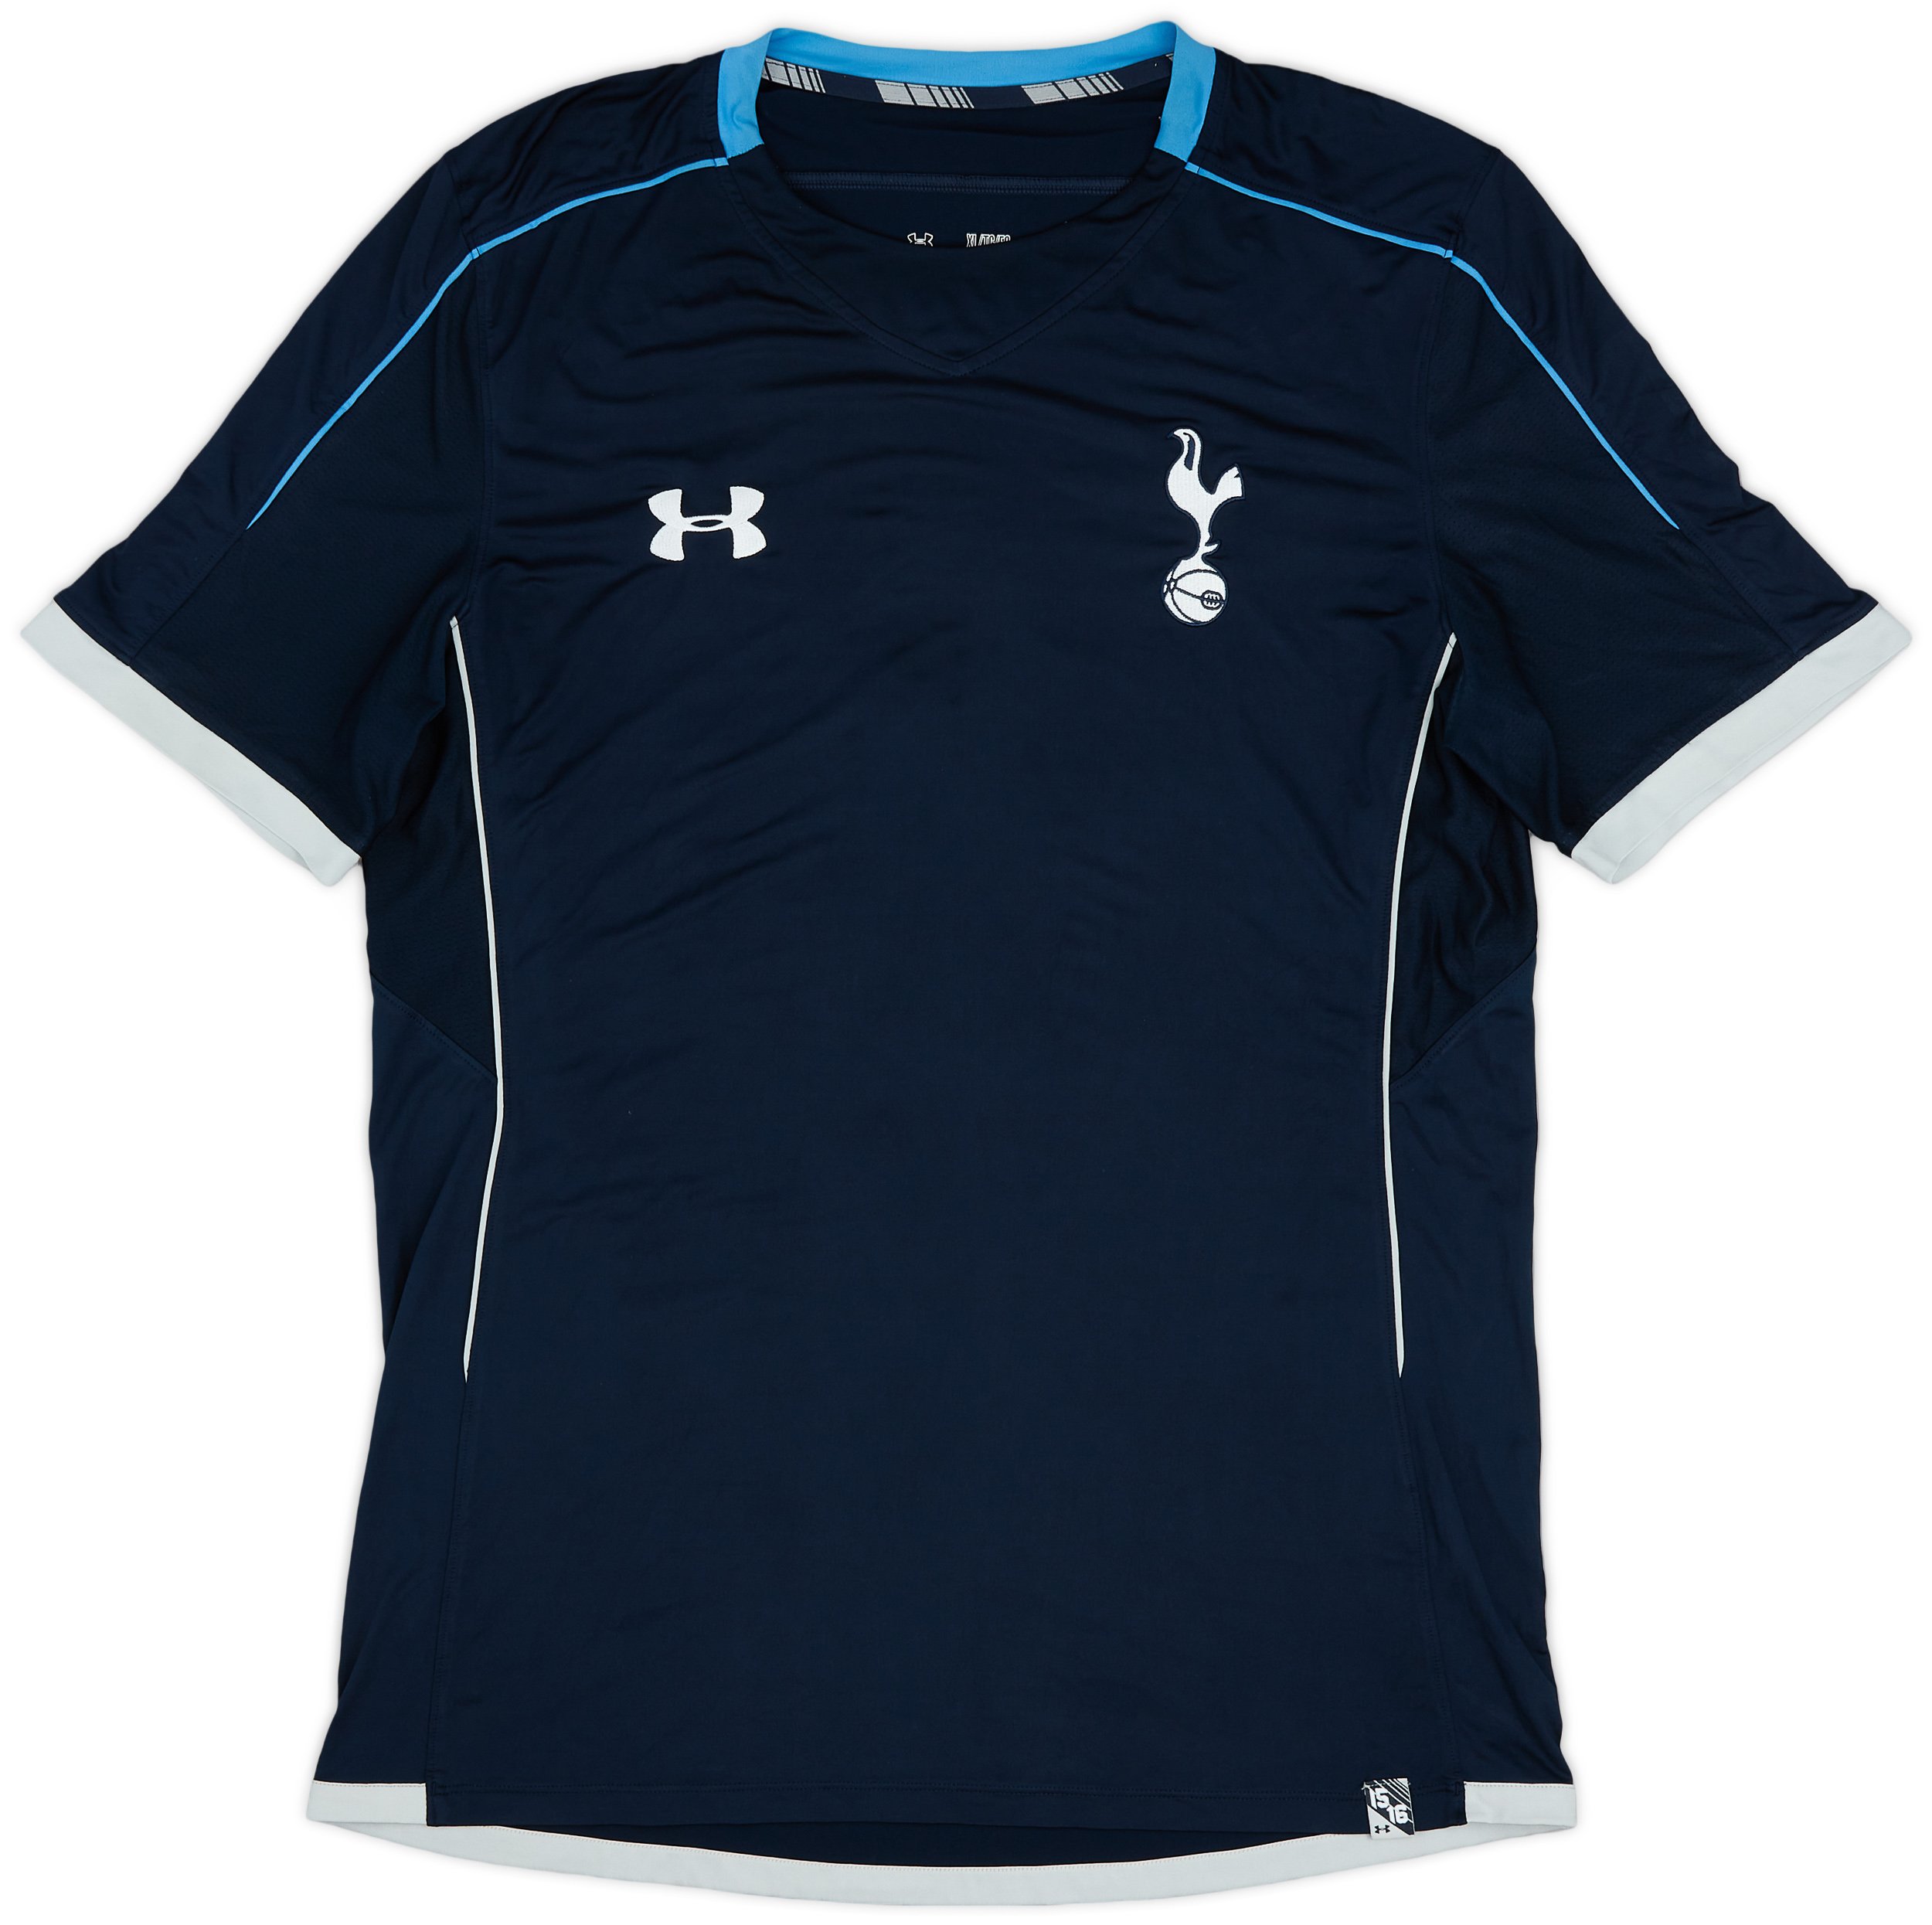 Tottenham Hotspur Spurs Under Armour 2015/2016 Training Shirt Jersey Trikot  Top